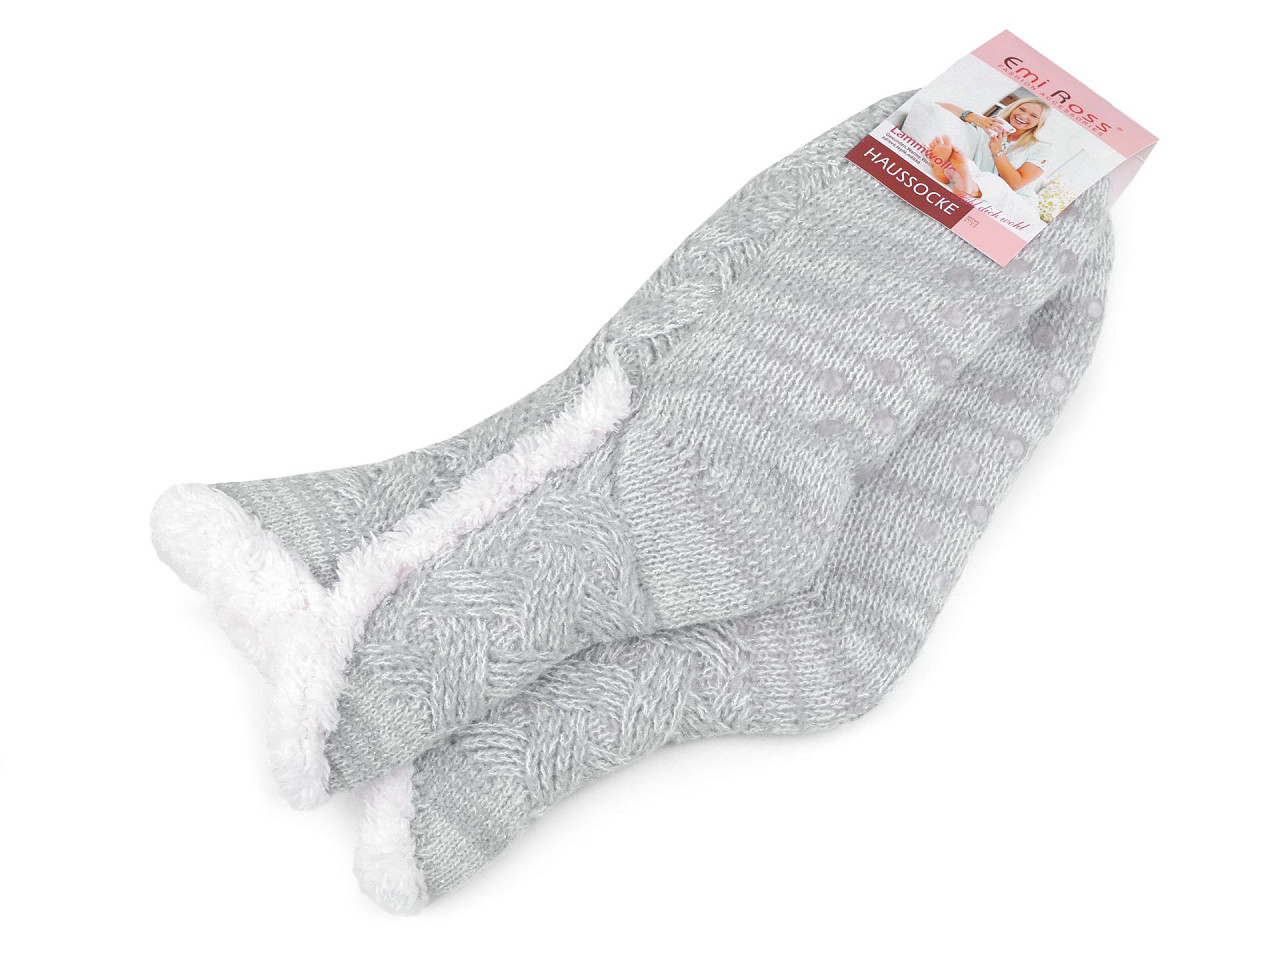 Ponožky zimní s kožíškem a protiskluzem Emi Ross, barva 1 (35-38) šedá nejsvětlejší